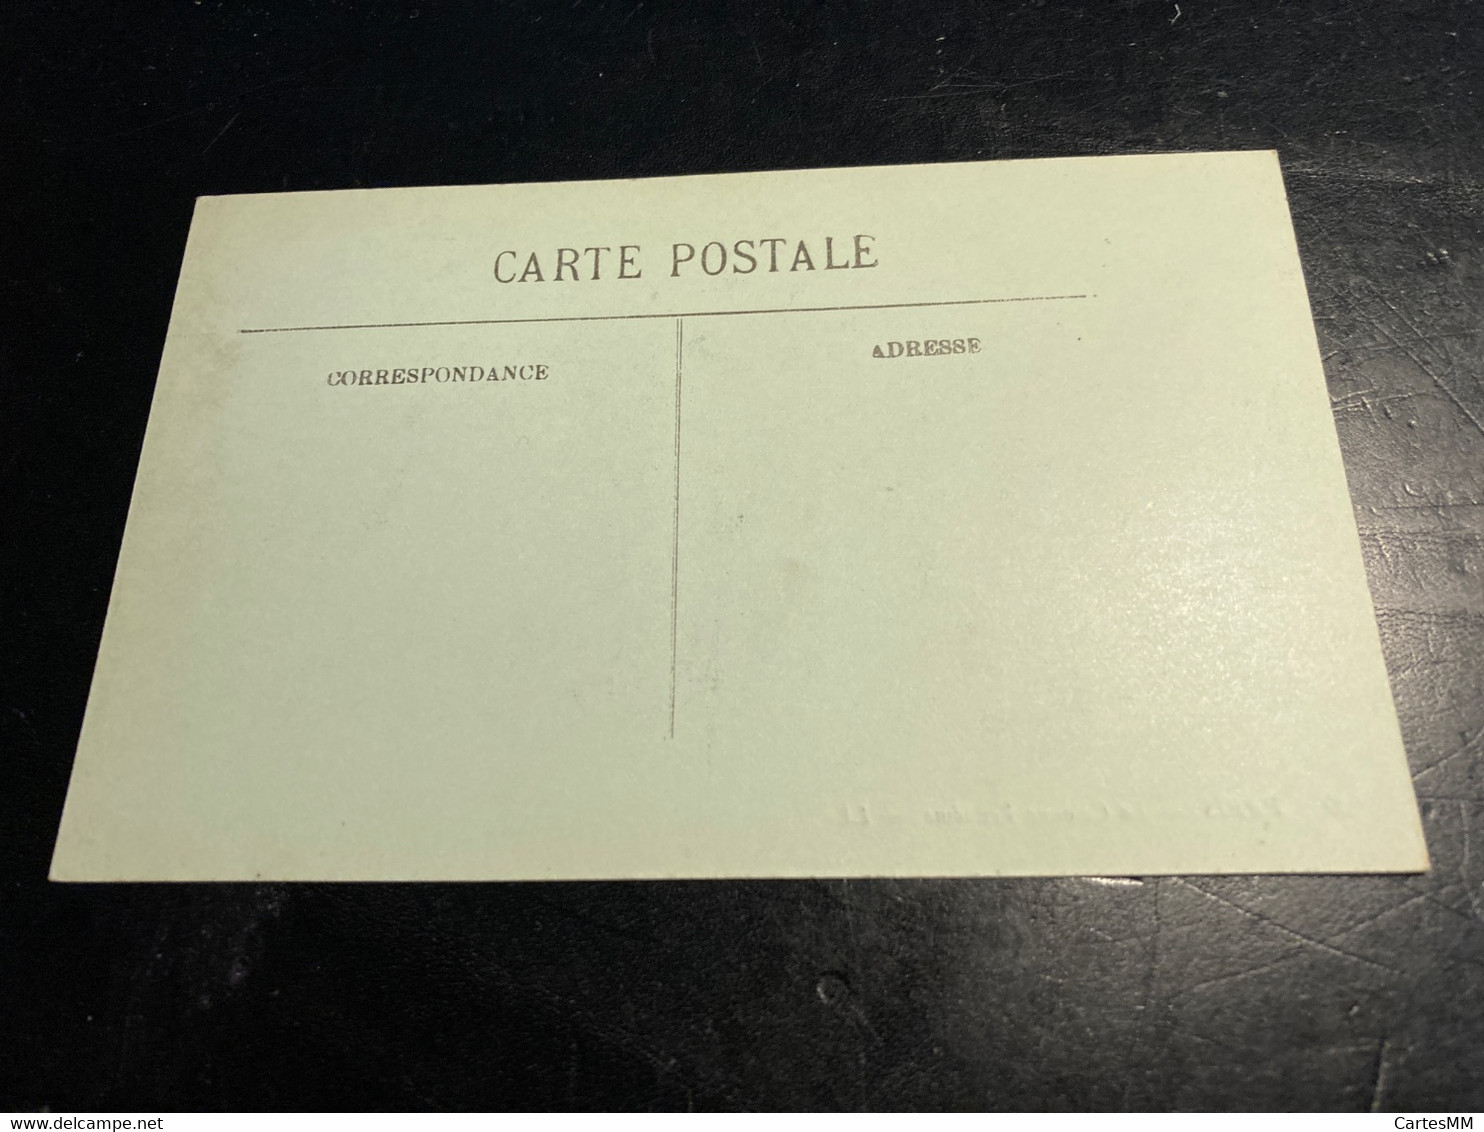 Paris RARE Carte Postale Stéréo La Colonne Vendome - Cartes Stéréoscopiques